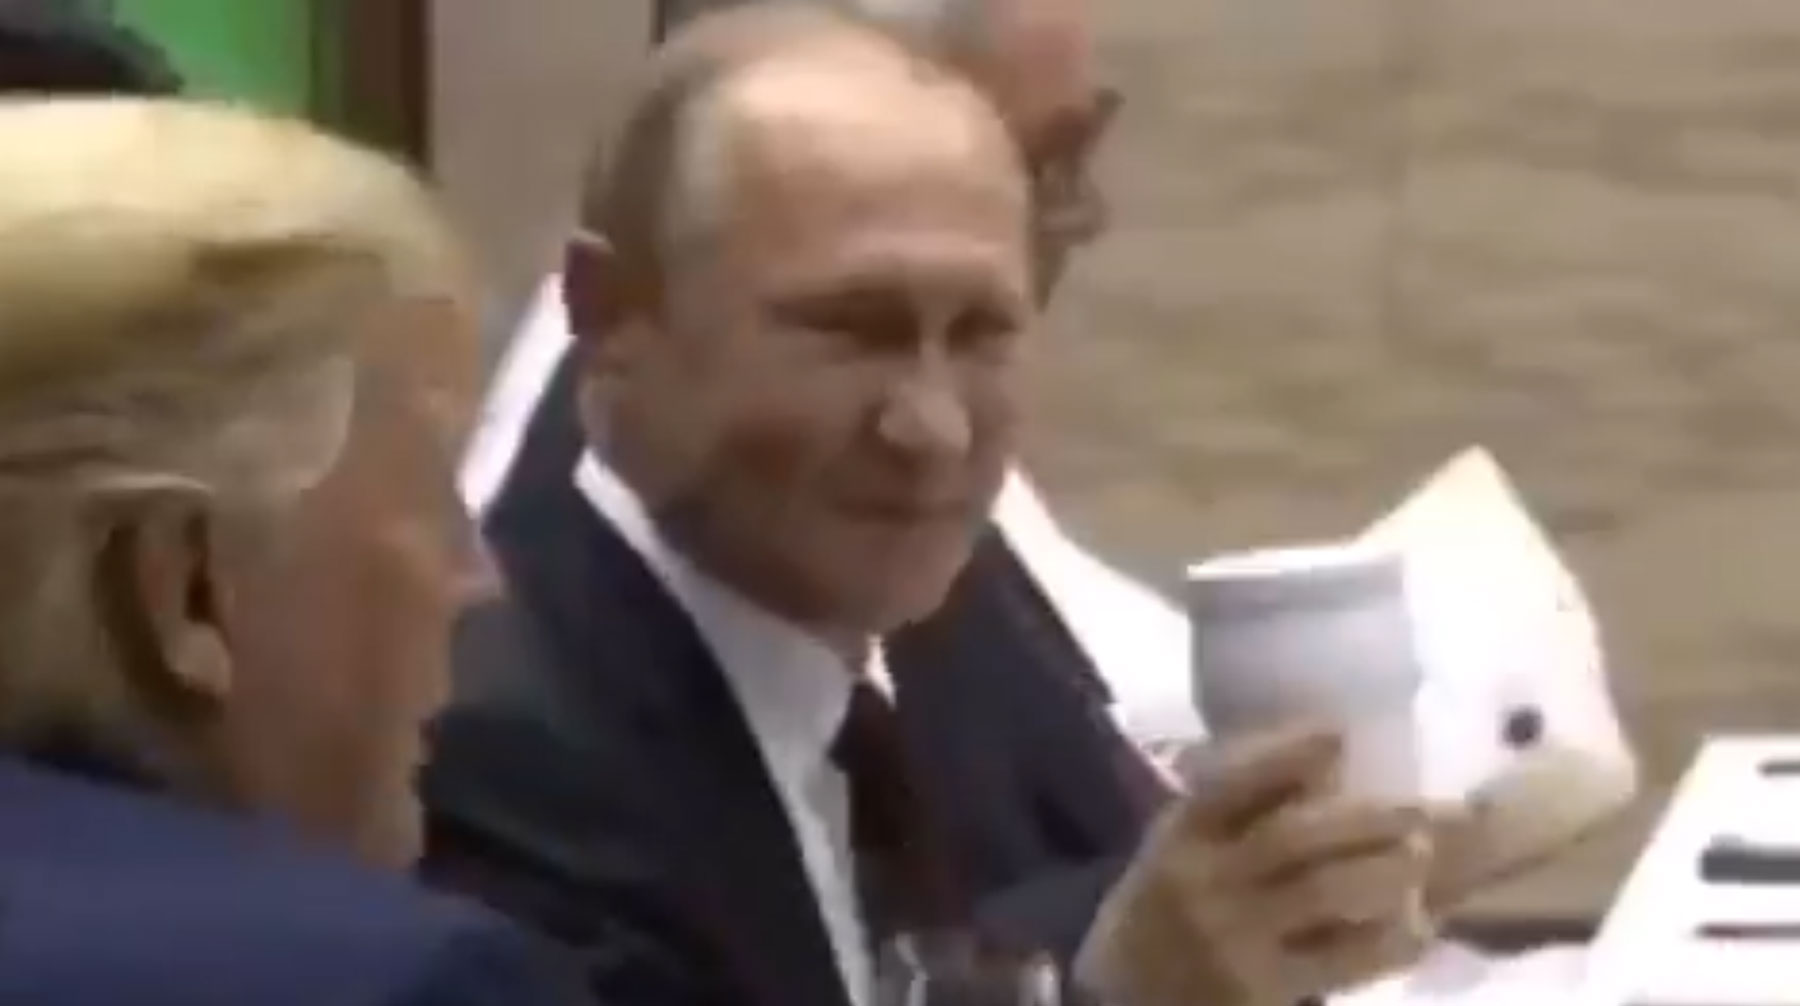 Пресс-секретарь президента РФ Дмитрий Песков пояснил, что в этой емкости у главы государства был чай Скриншот: © Kremlin Pool